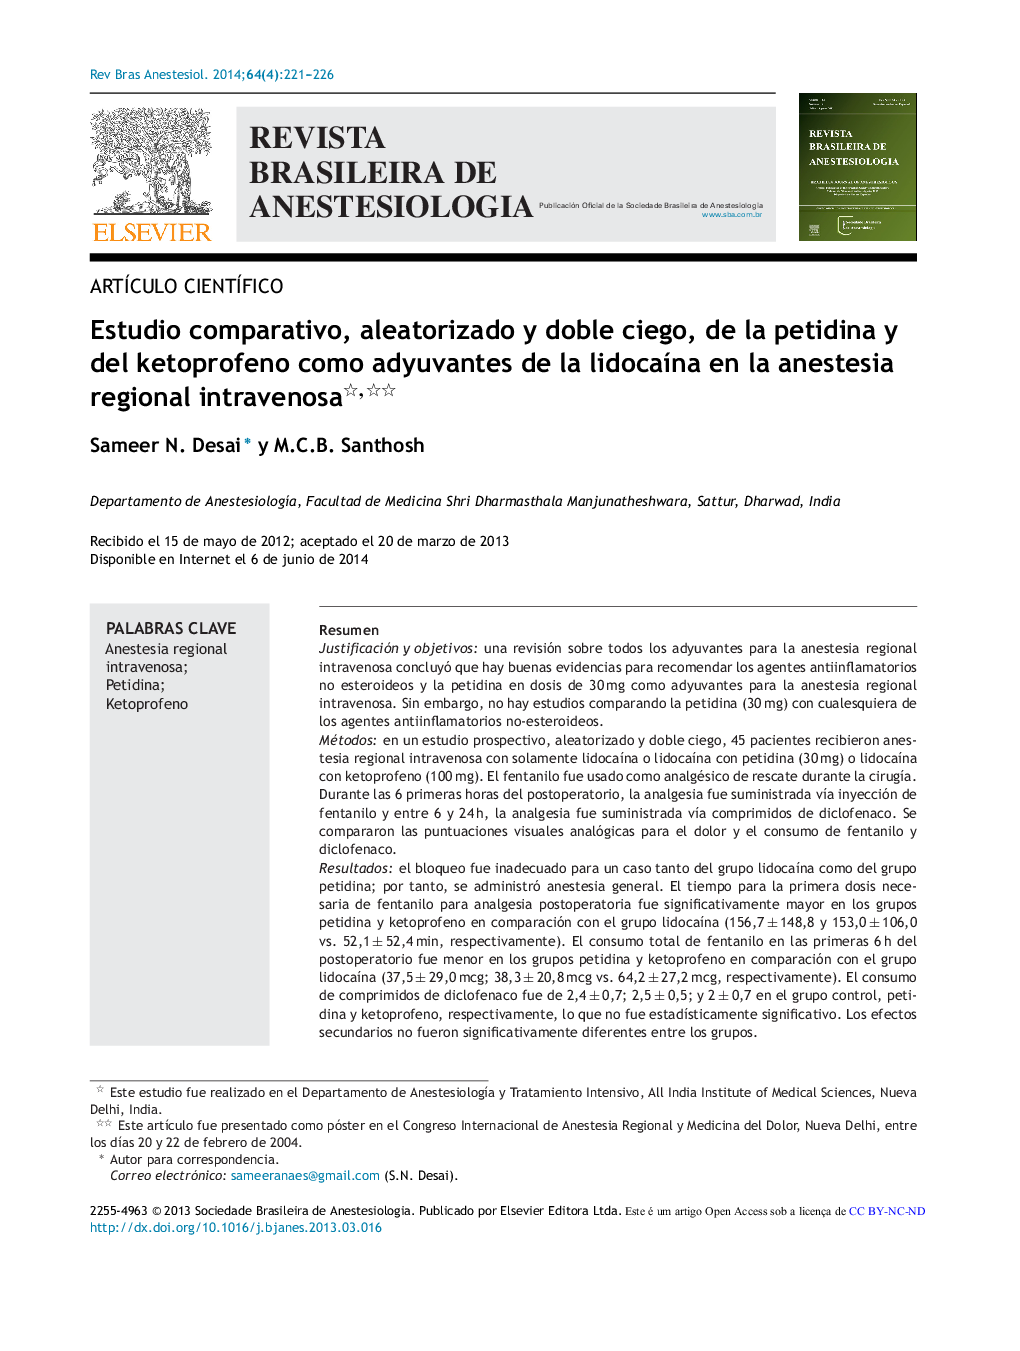 Estudio comparativo, aleatorizado y doble ciego, de la petidina y del ketoprofeno como adyuvantes de la lidocaína en la anestesia regional intravenosa 